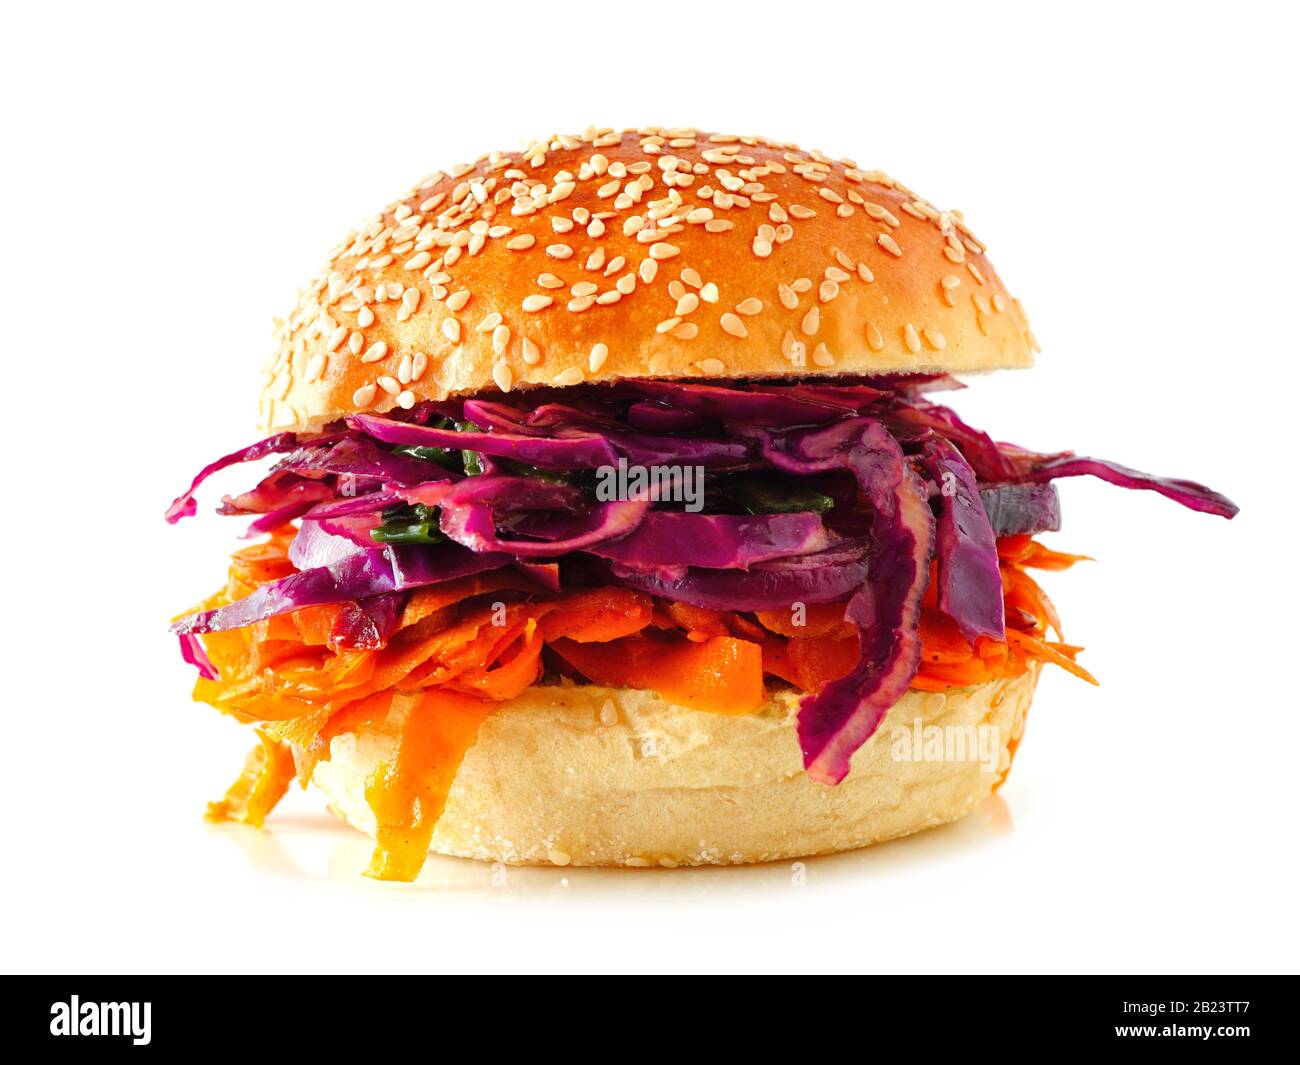 Pfropfiger, fleischloser Burger mit Rotkohl, isoliert auf weißem Grund. Gesundes Essen, pflanzliches Fleischersatzkonzept. Stockfoto